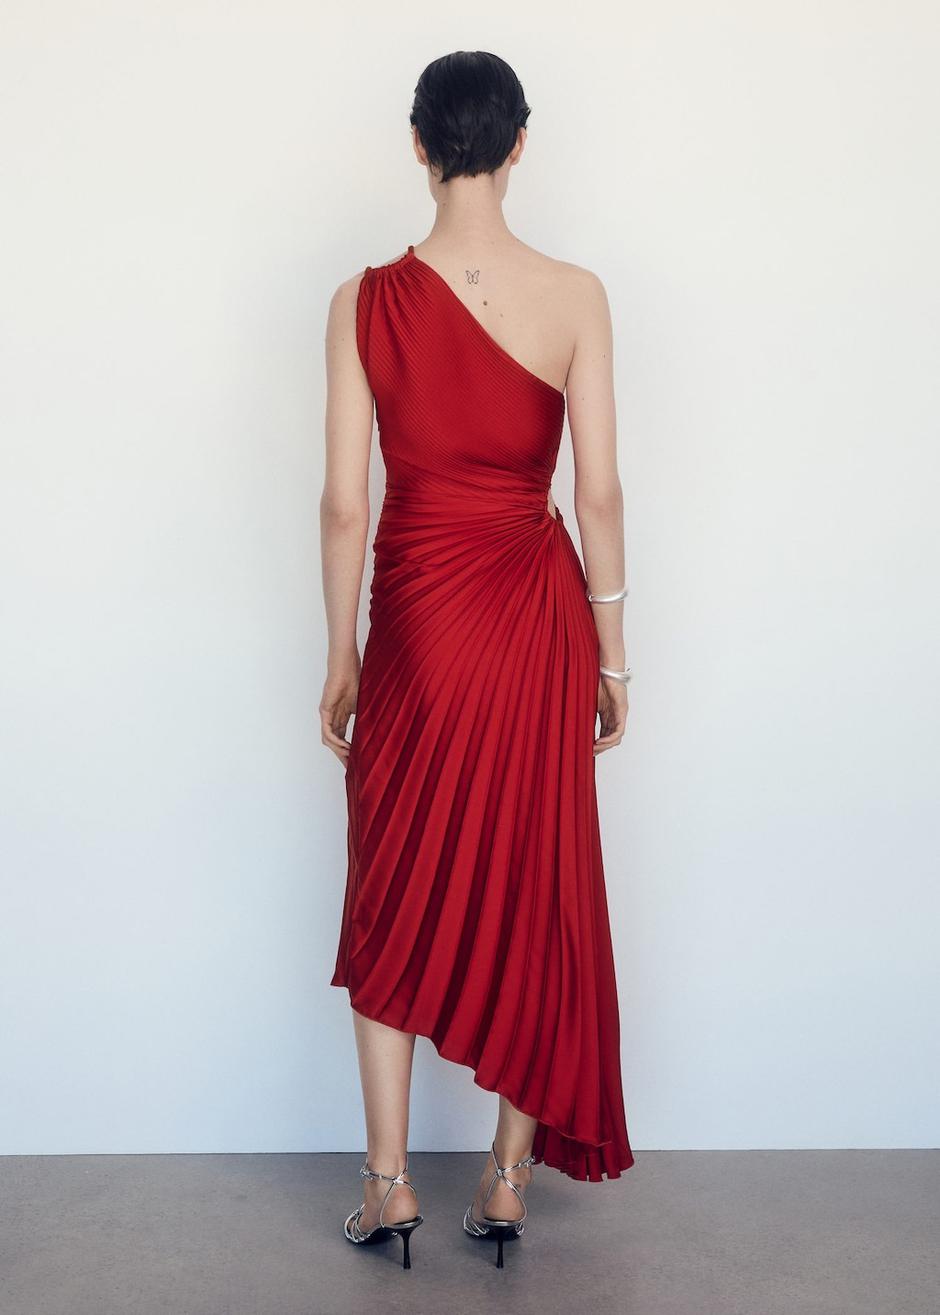 Foto: Mango, viralna asimetrična haljina u crvenoj boji | Autor: Mango